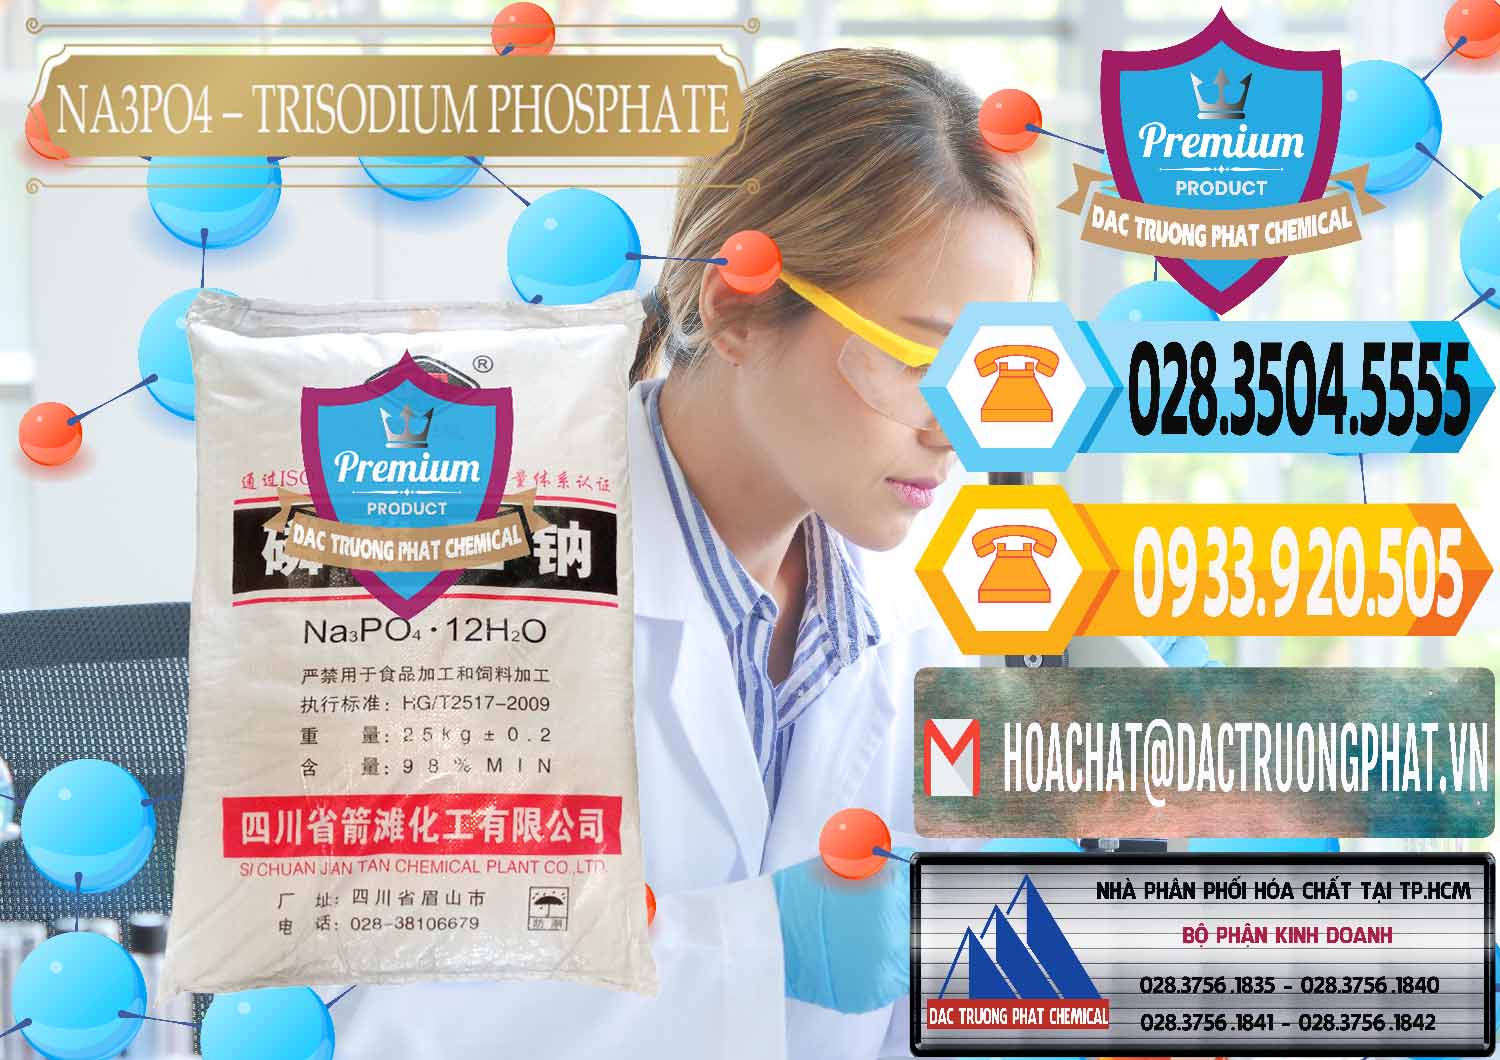 Nơi chuyên kinh doanh _ bán Na3PO4 – Trisodium Phosphate Trung Quốc China JT - 0102 - Nơi cung cấp & bán hóa chất tại TP.HCM - hoachattayrua.net